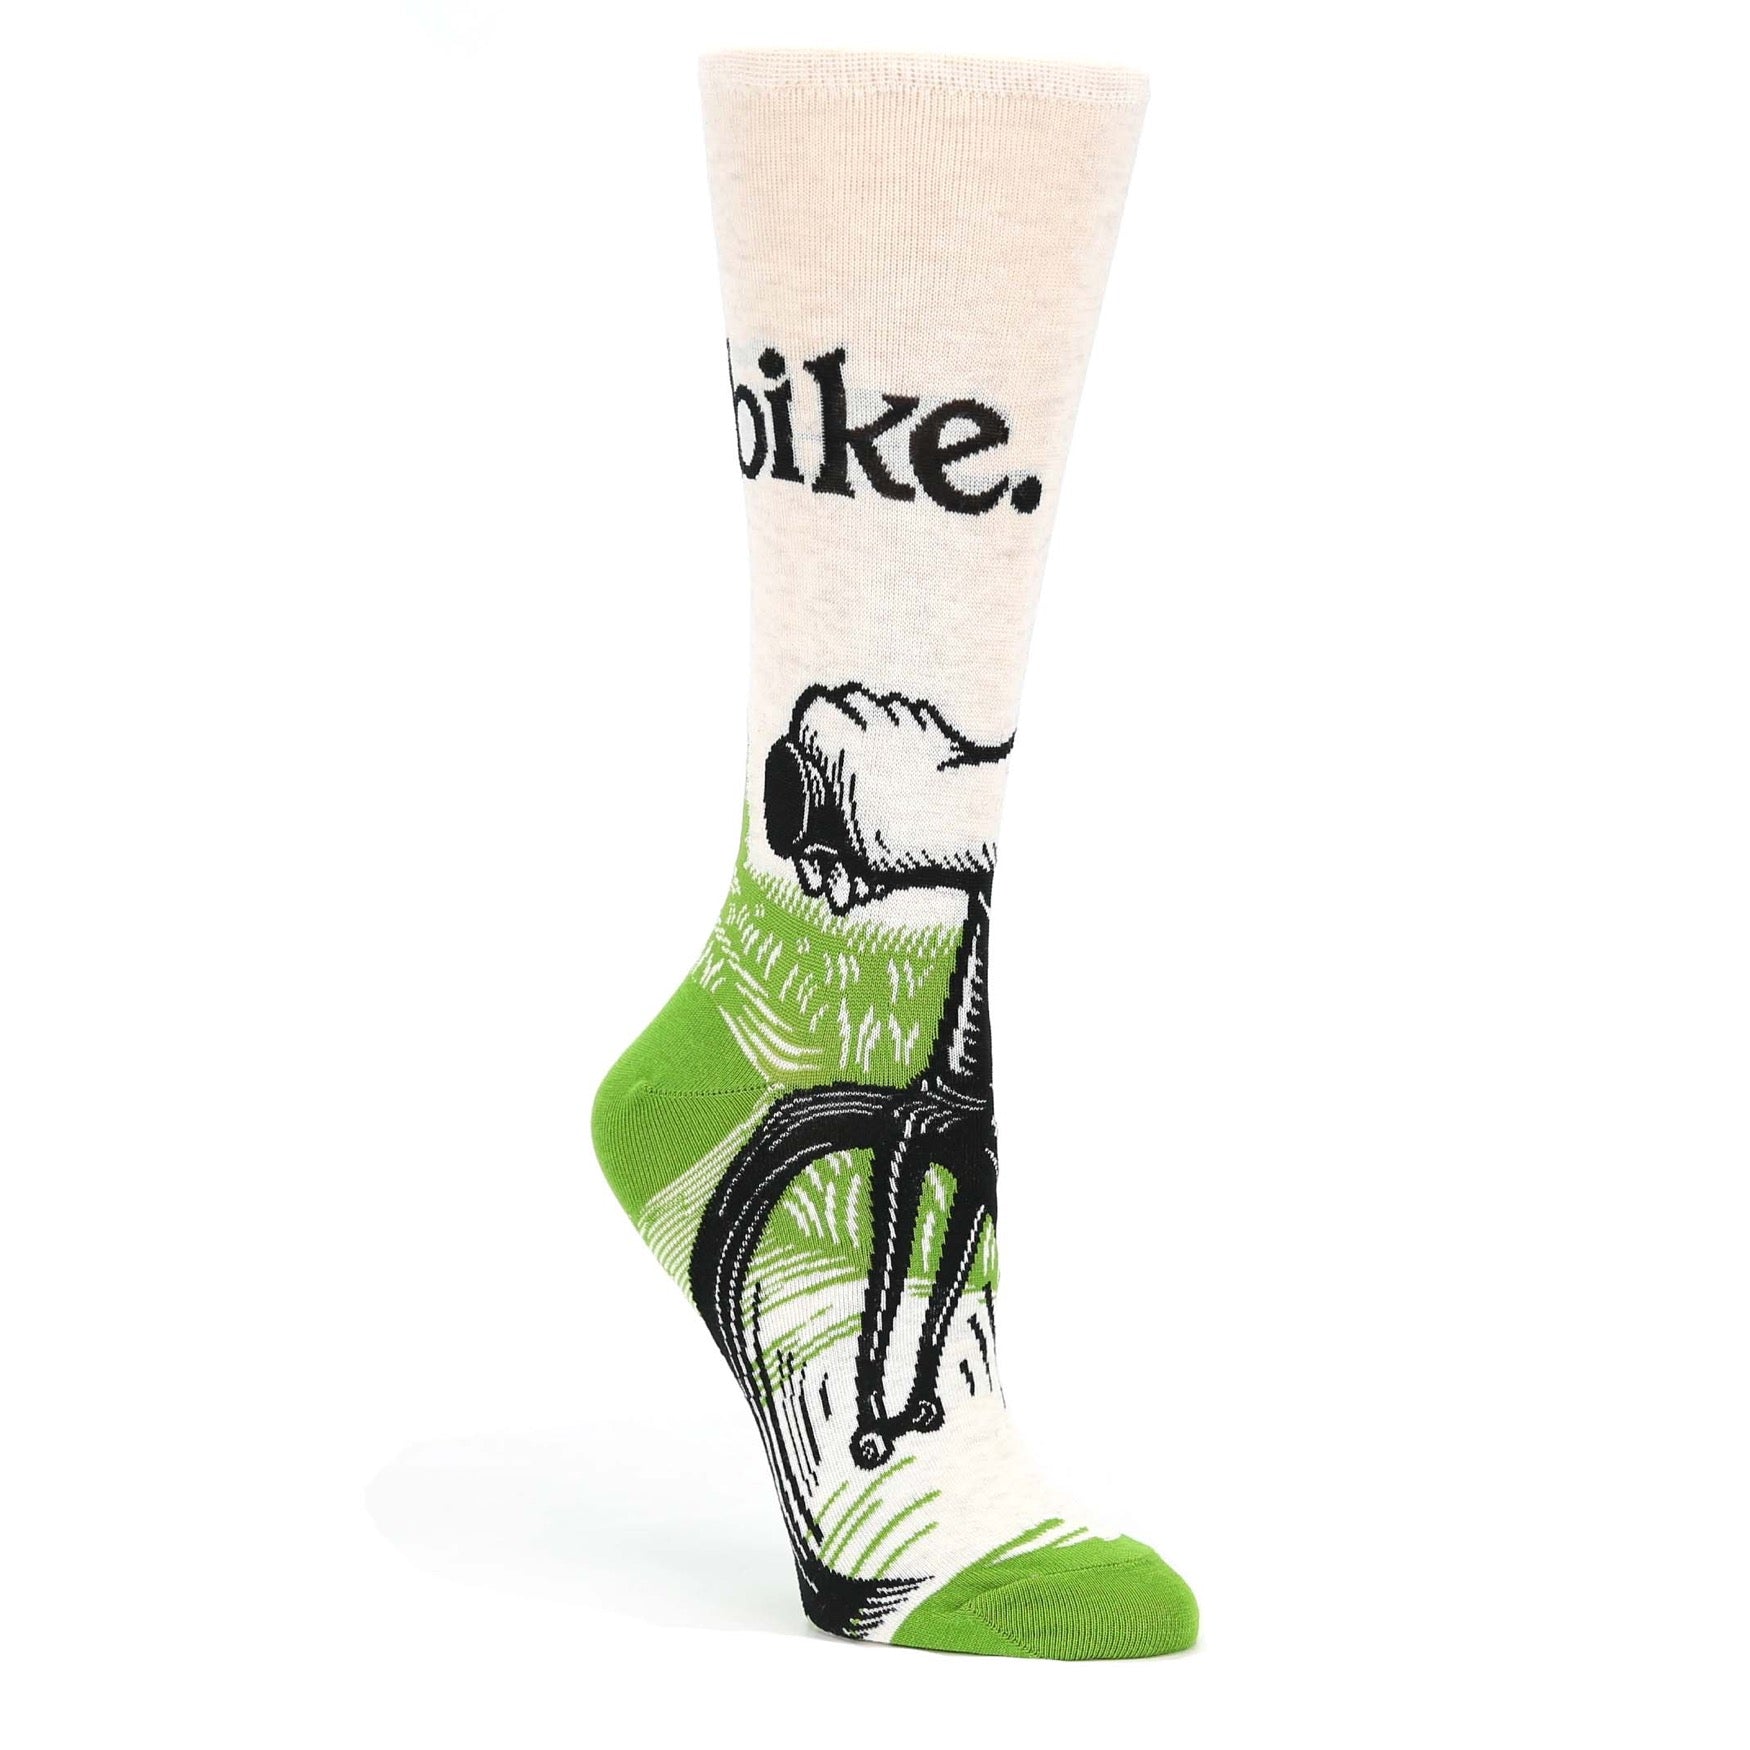 Bike Socks - Novelty Dress Socks for Women